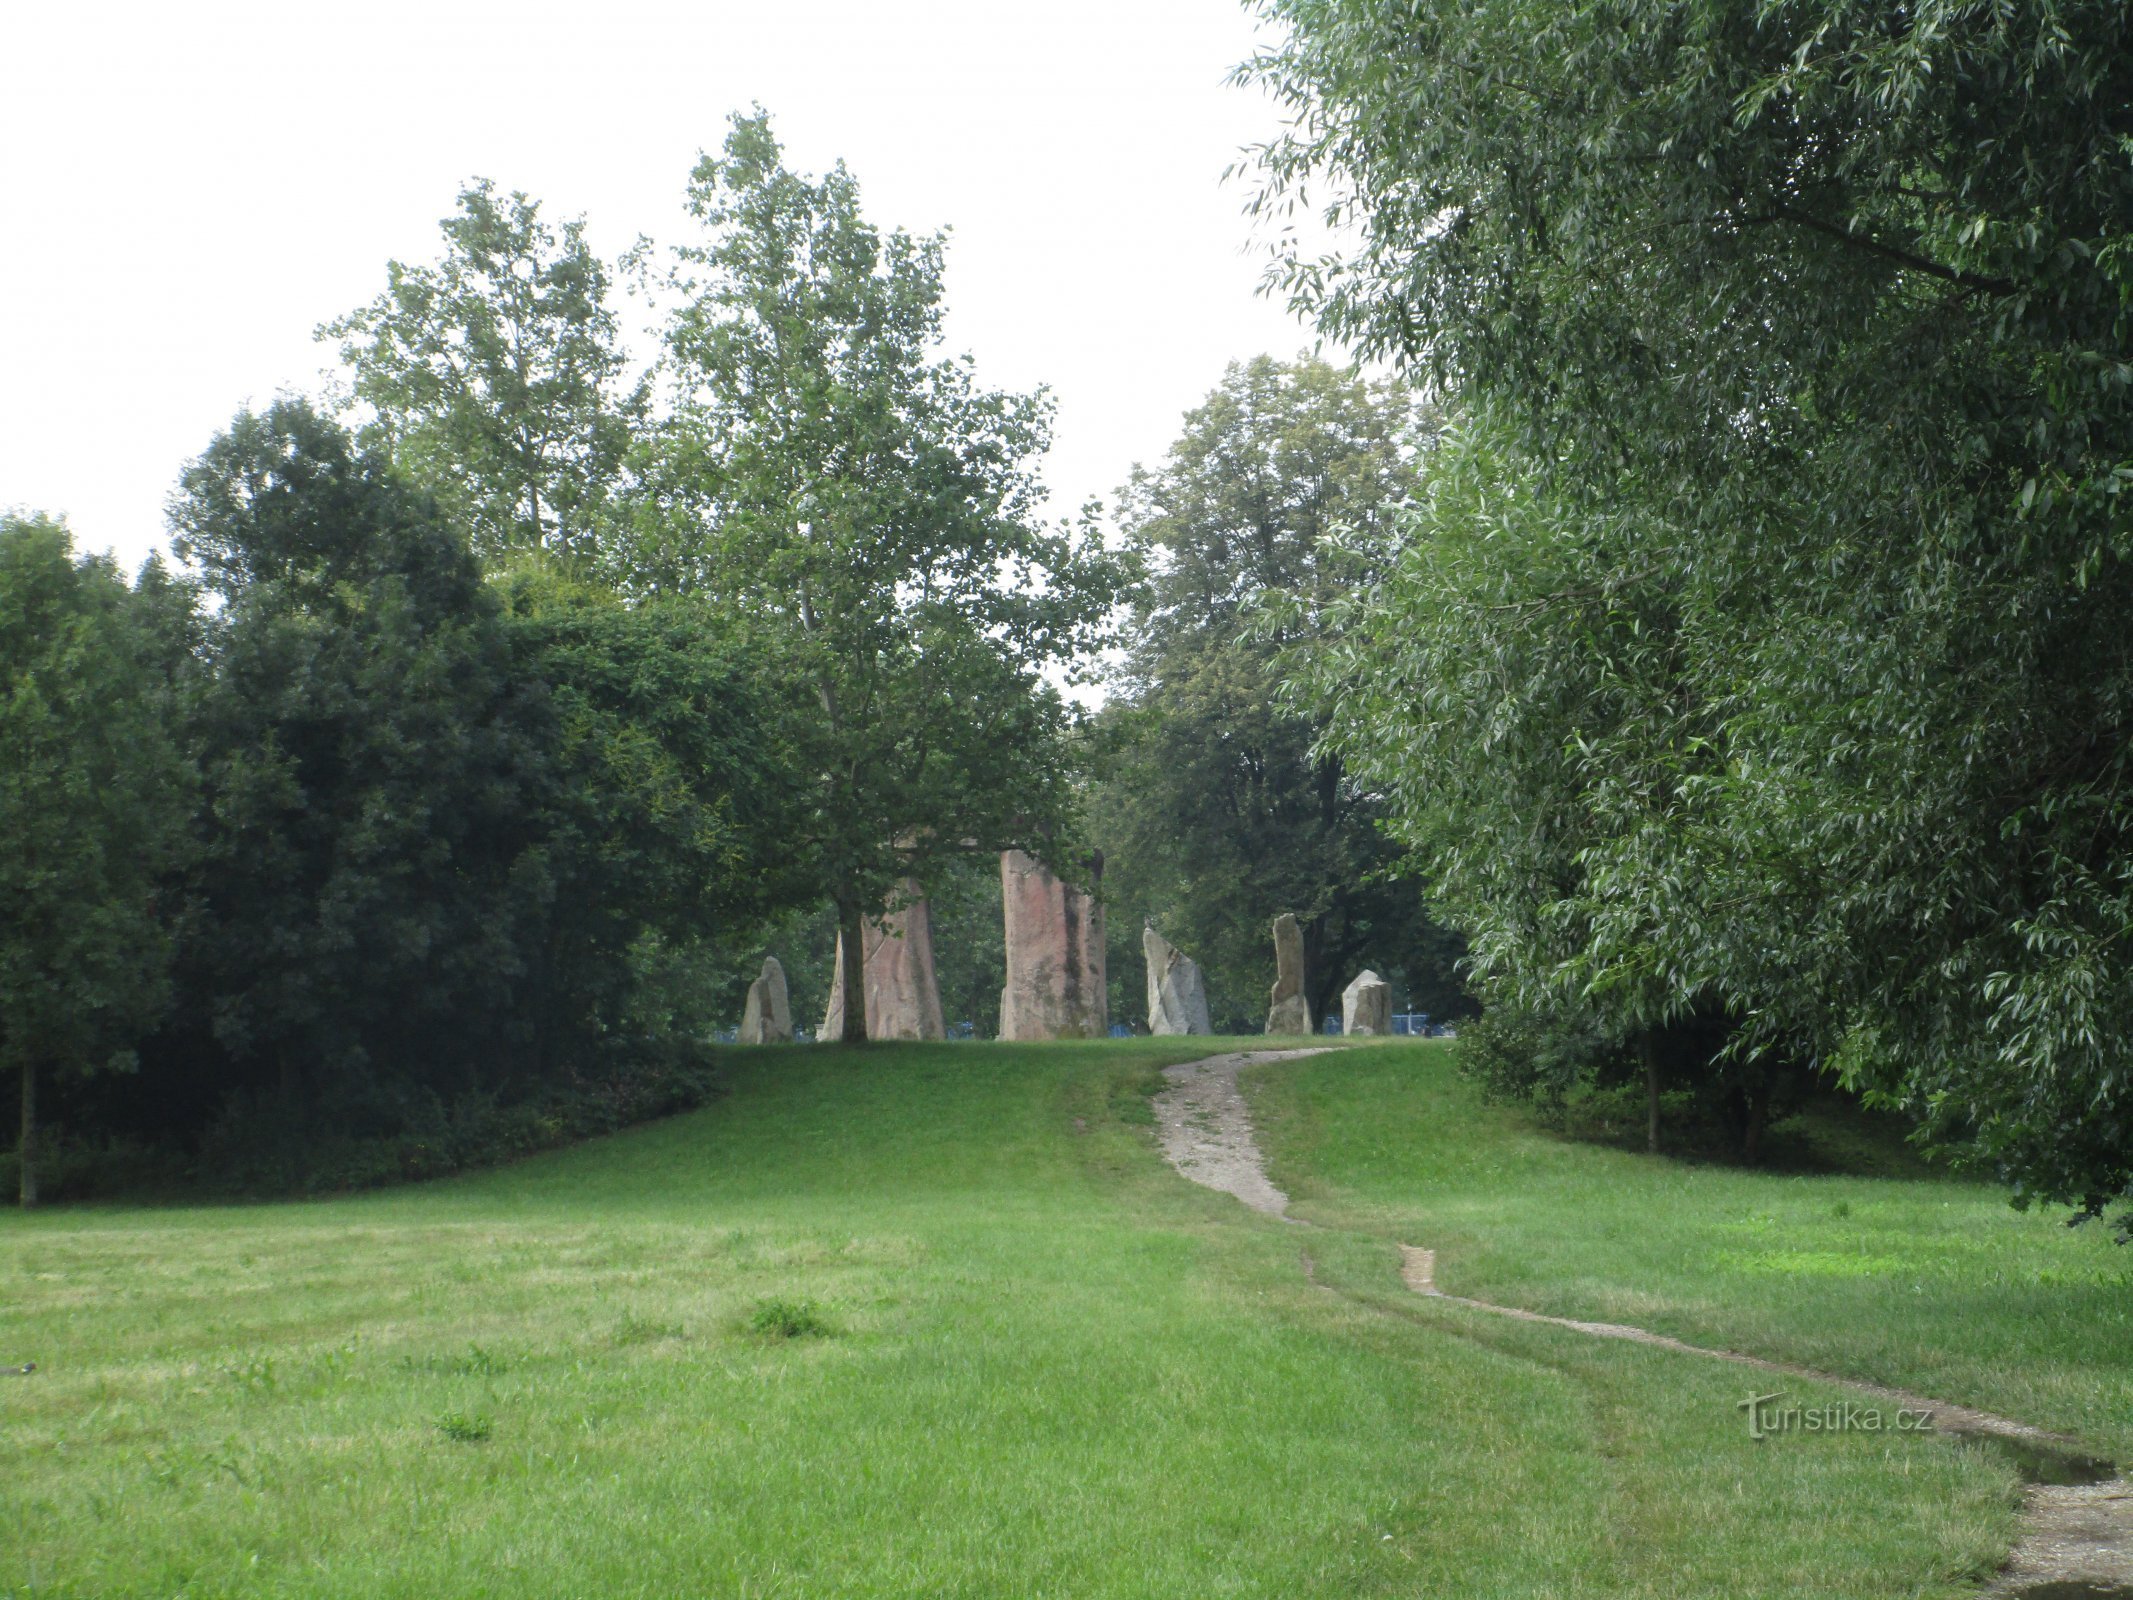 Blick auf die Nachbildung von Stonehenge vom Soutok Forest Park